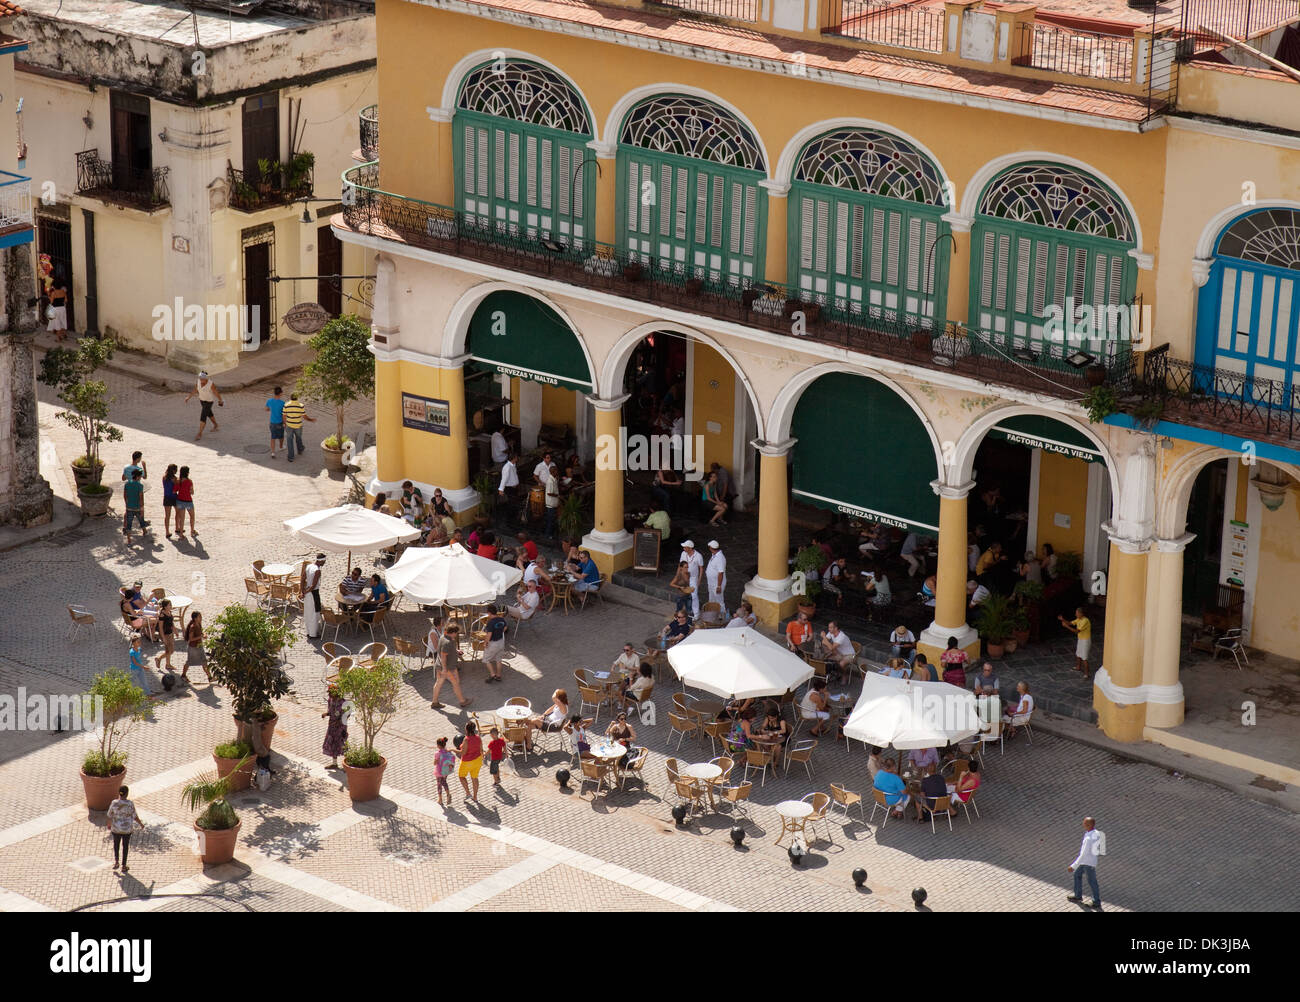 Menschen, die auf der Factoria Plaza Vieja oder Cervezas y Maltas, Mikrobrauerei, Plaza Vieja, Havanna Kuba, Karibik, Lateinamerika trinken Stockfoto